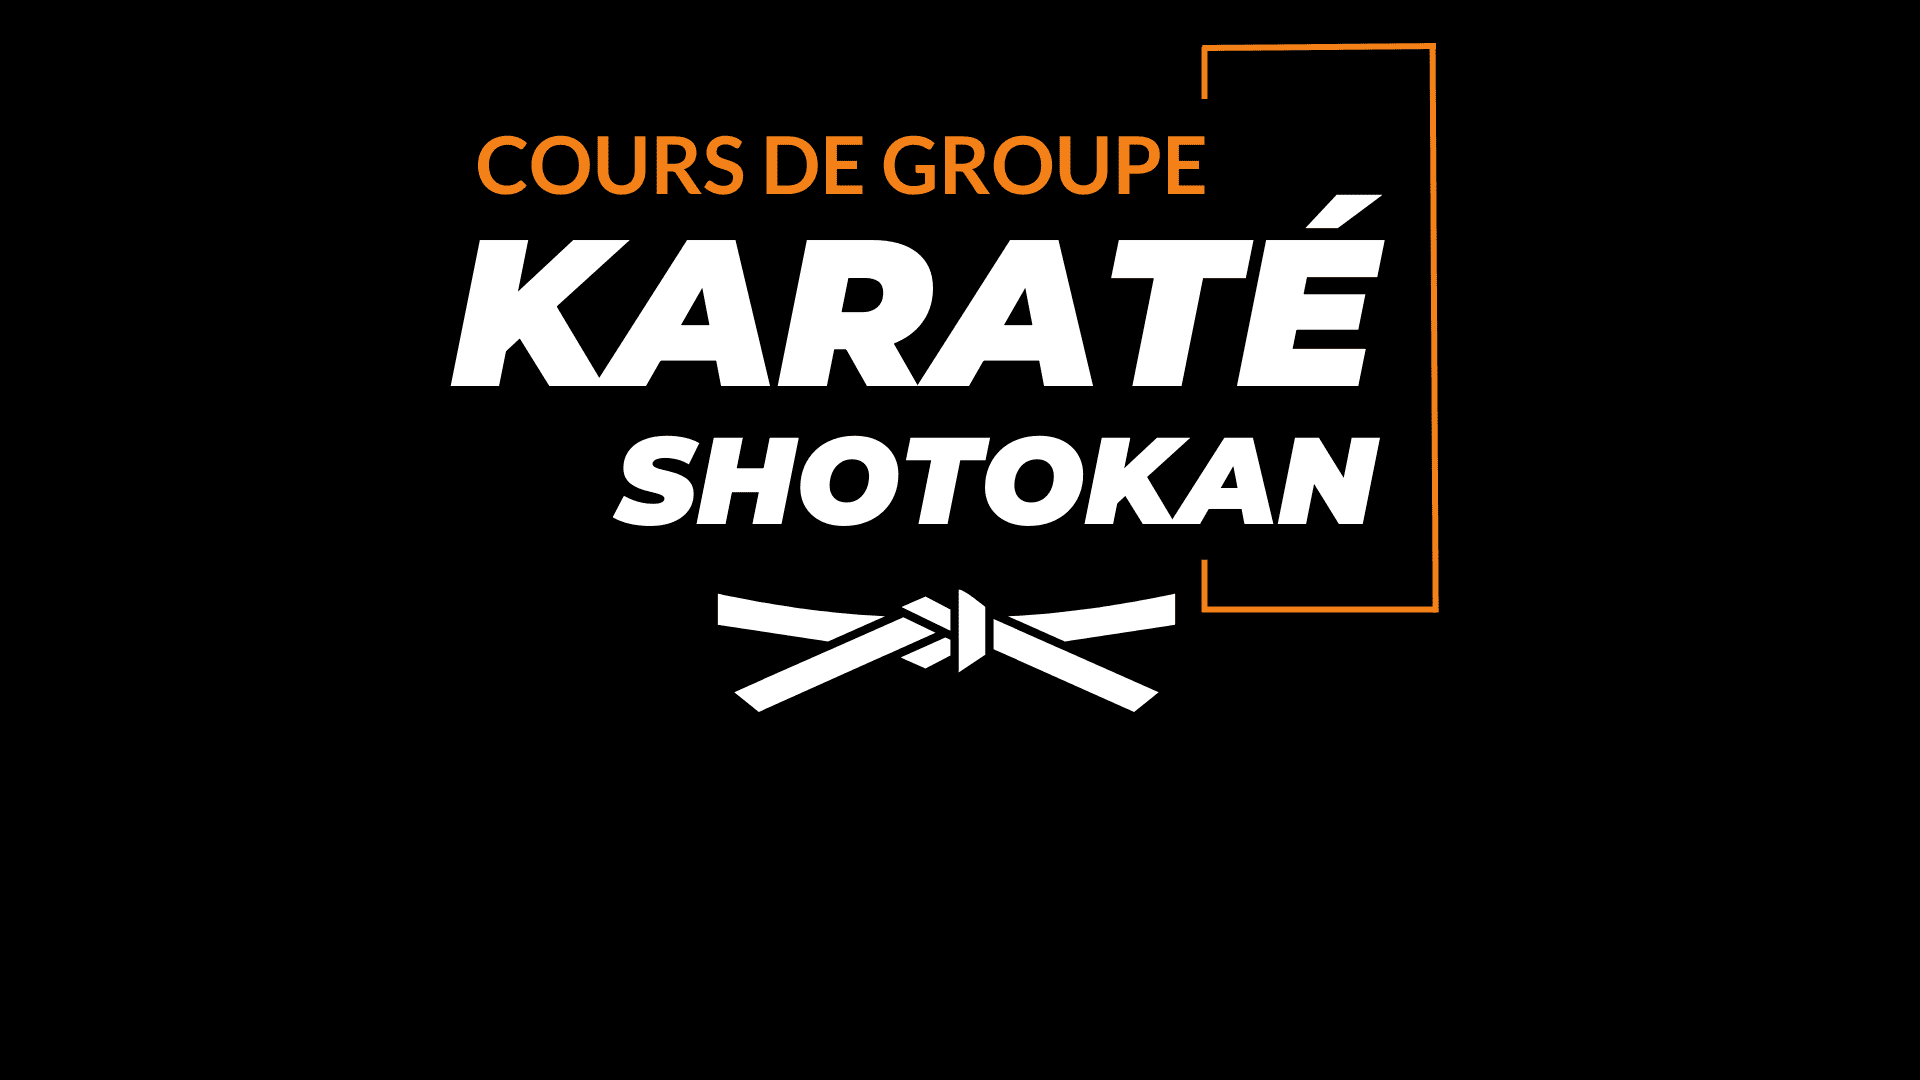 Karaté Shotokan - Cours de groupe